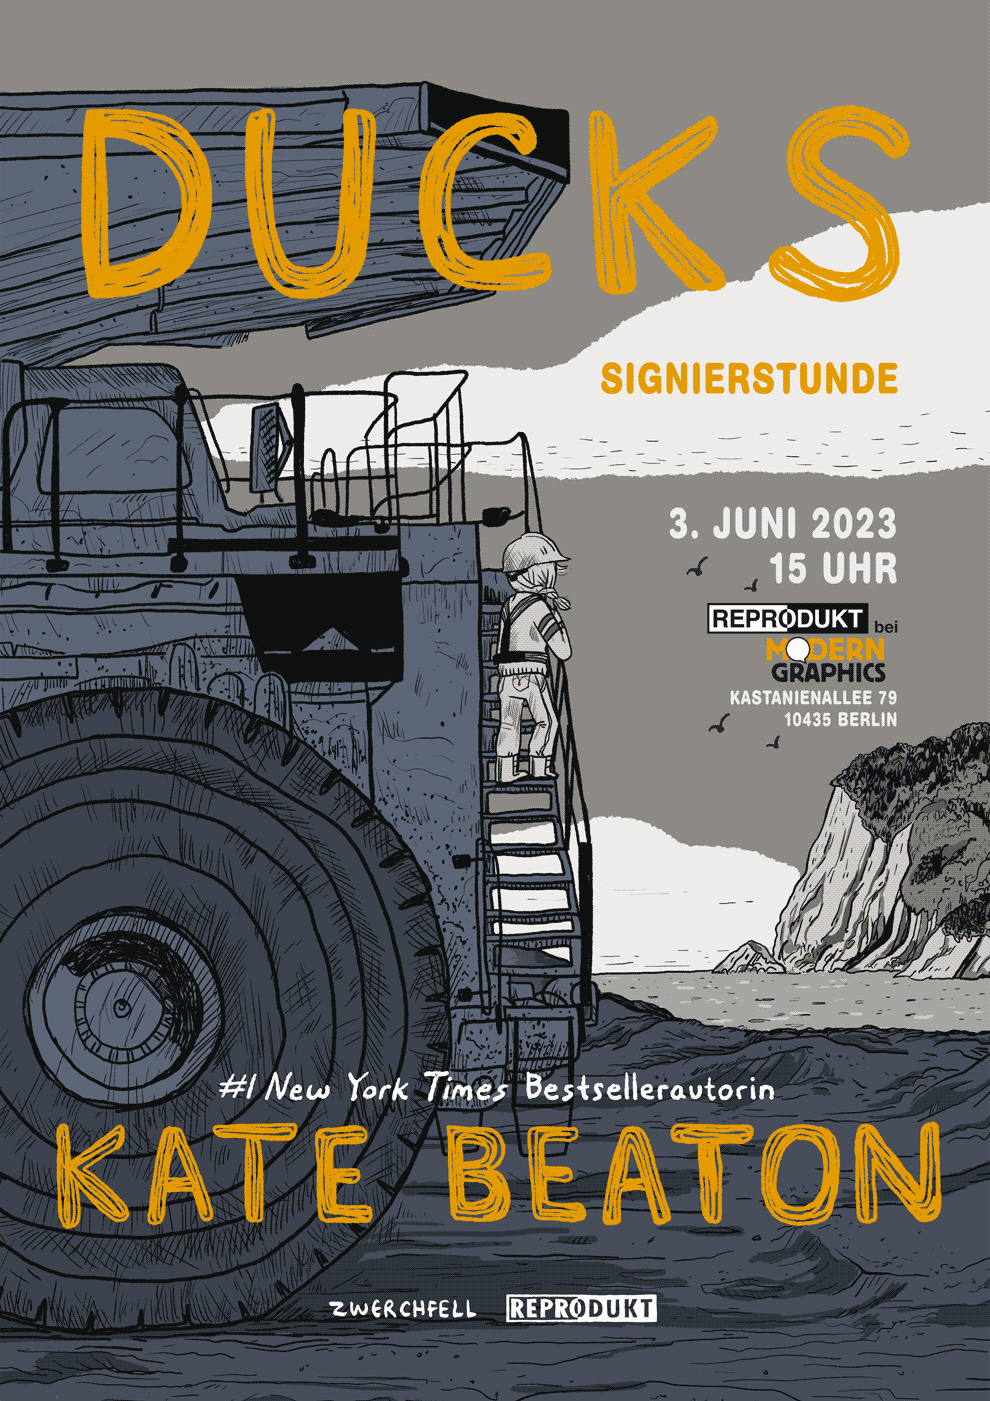 Ducks: Signierstunde mit Kate Beaton. 03.06.23, 15:00 Uhr, Modern Graphics, Kastanienallee 79, 10435 Berlin